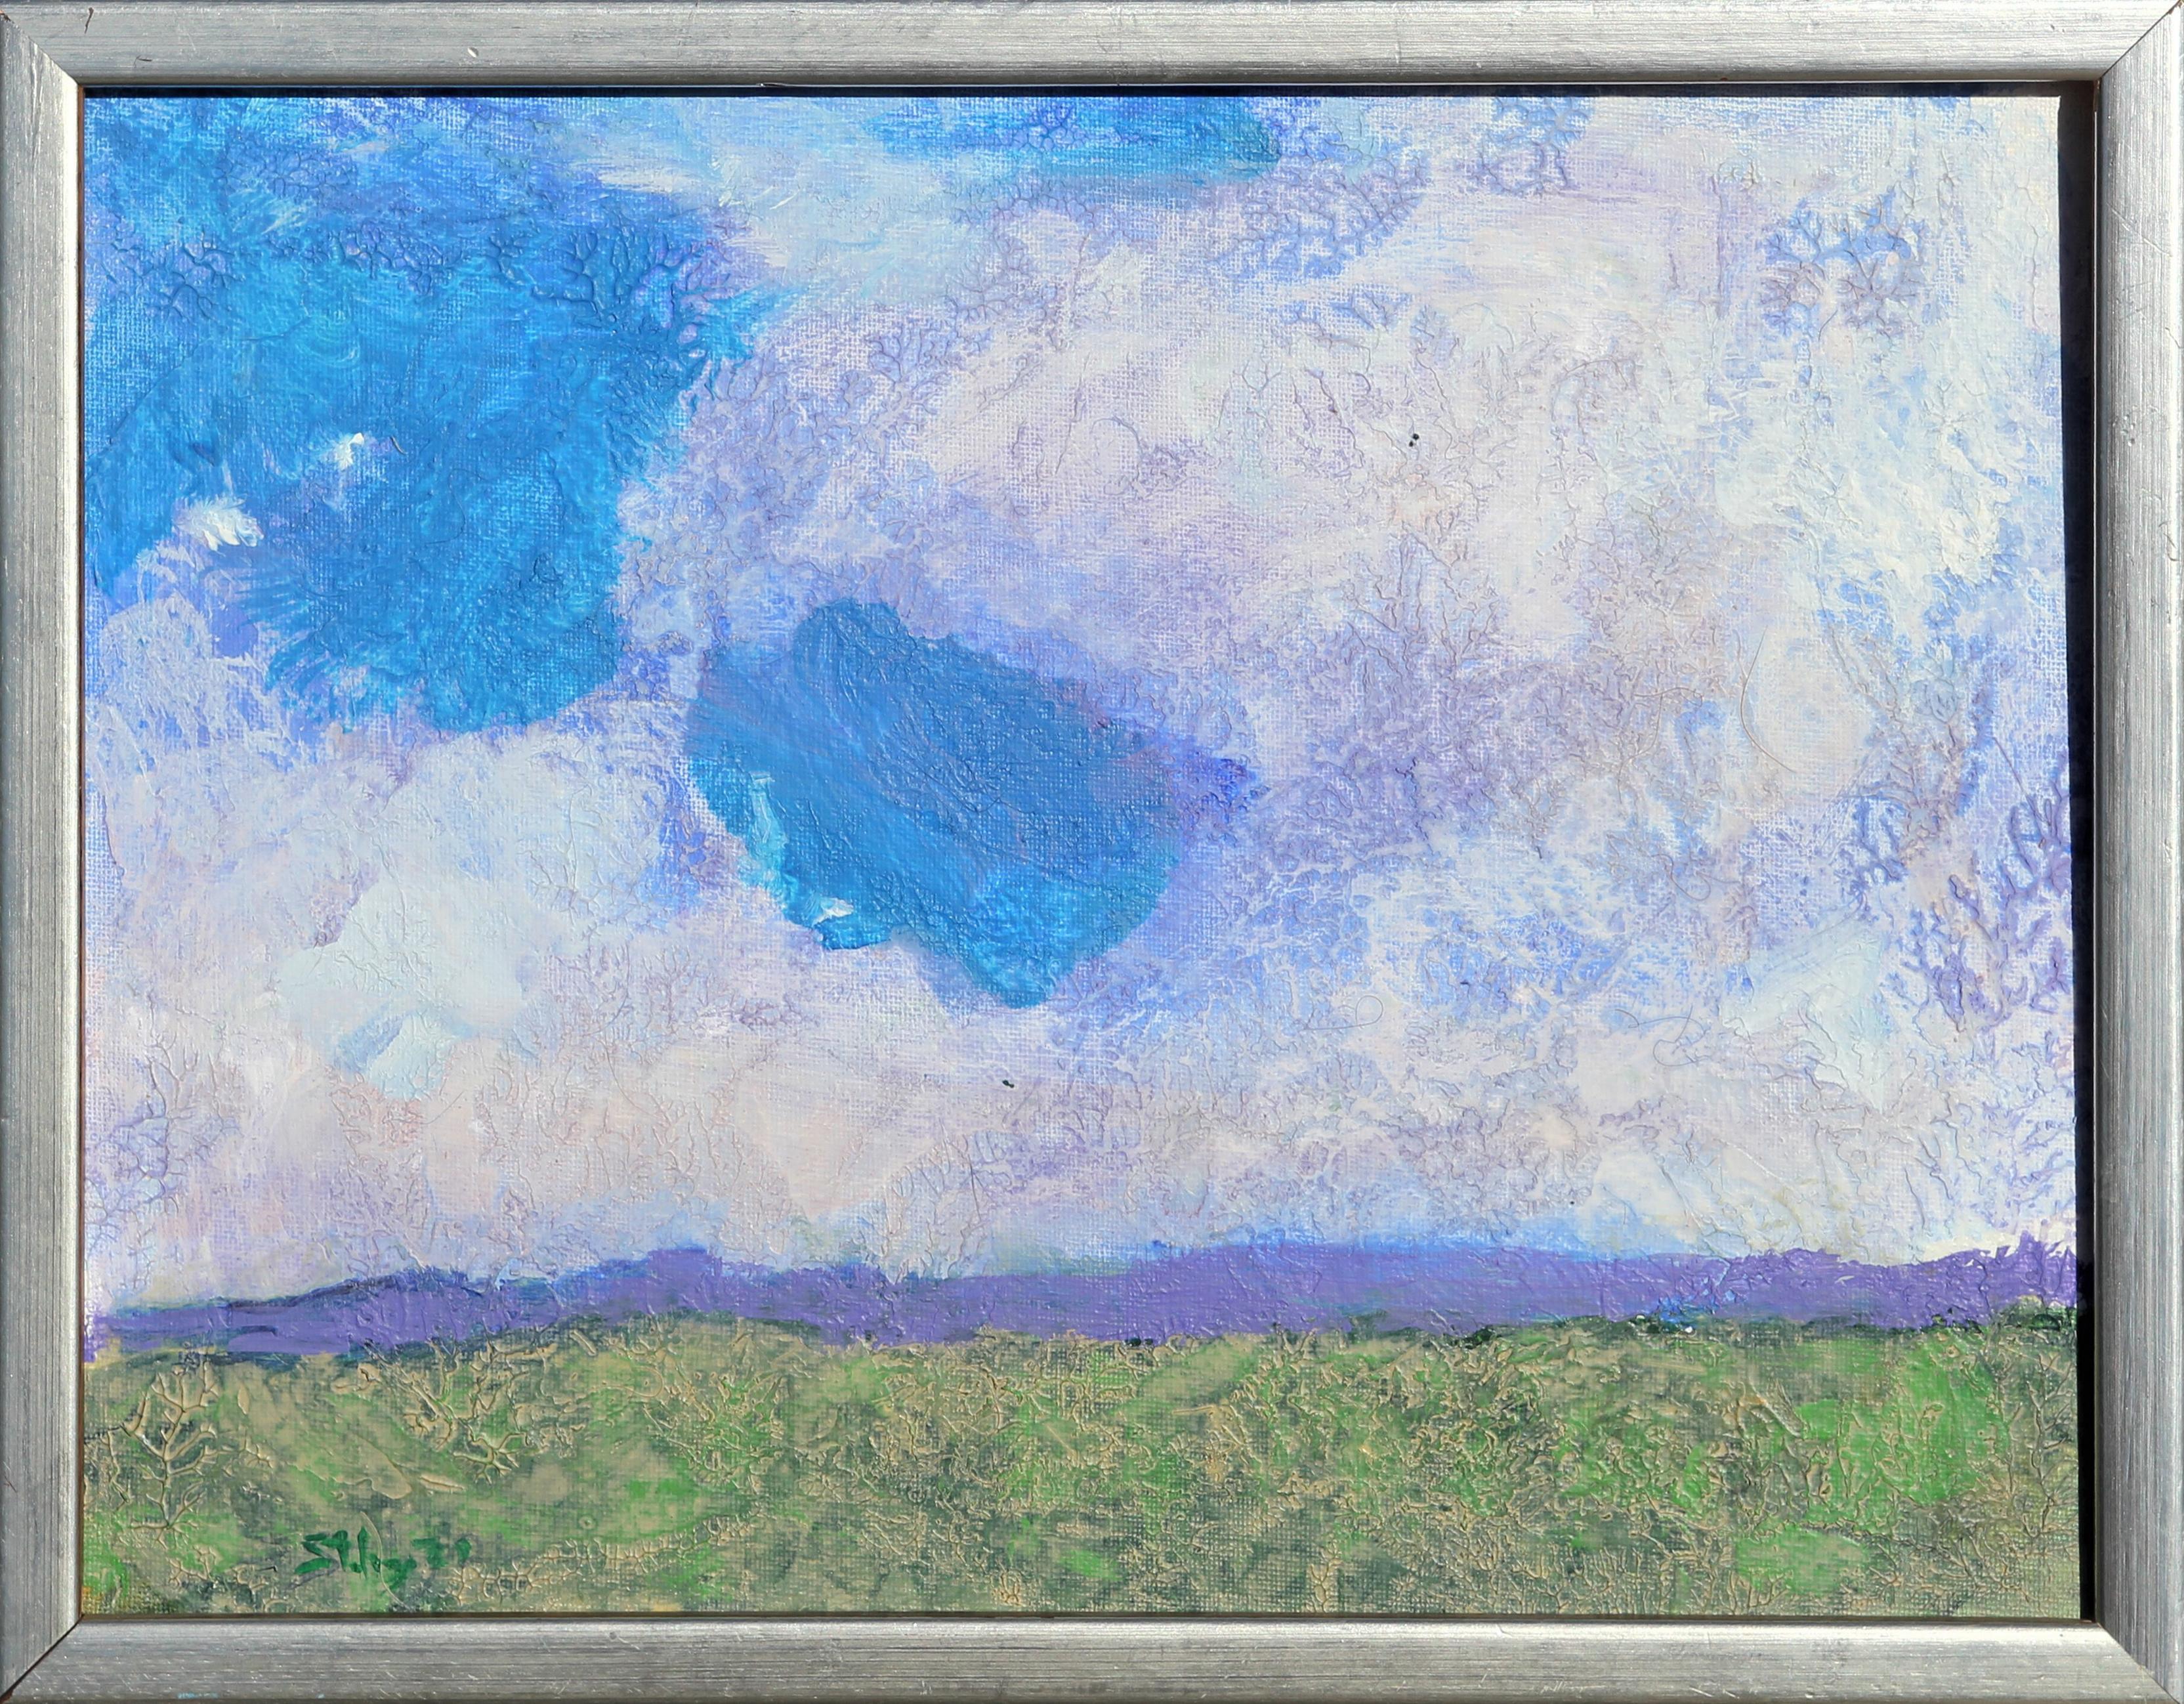 Landscape Painting Earl Staley - " Paysage 2" - Peinture abstraite contemporaine colorée du Sud - Paysage et ciel abstrait